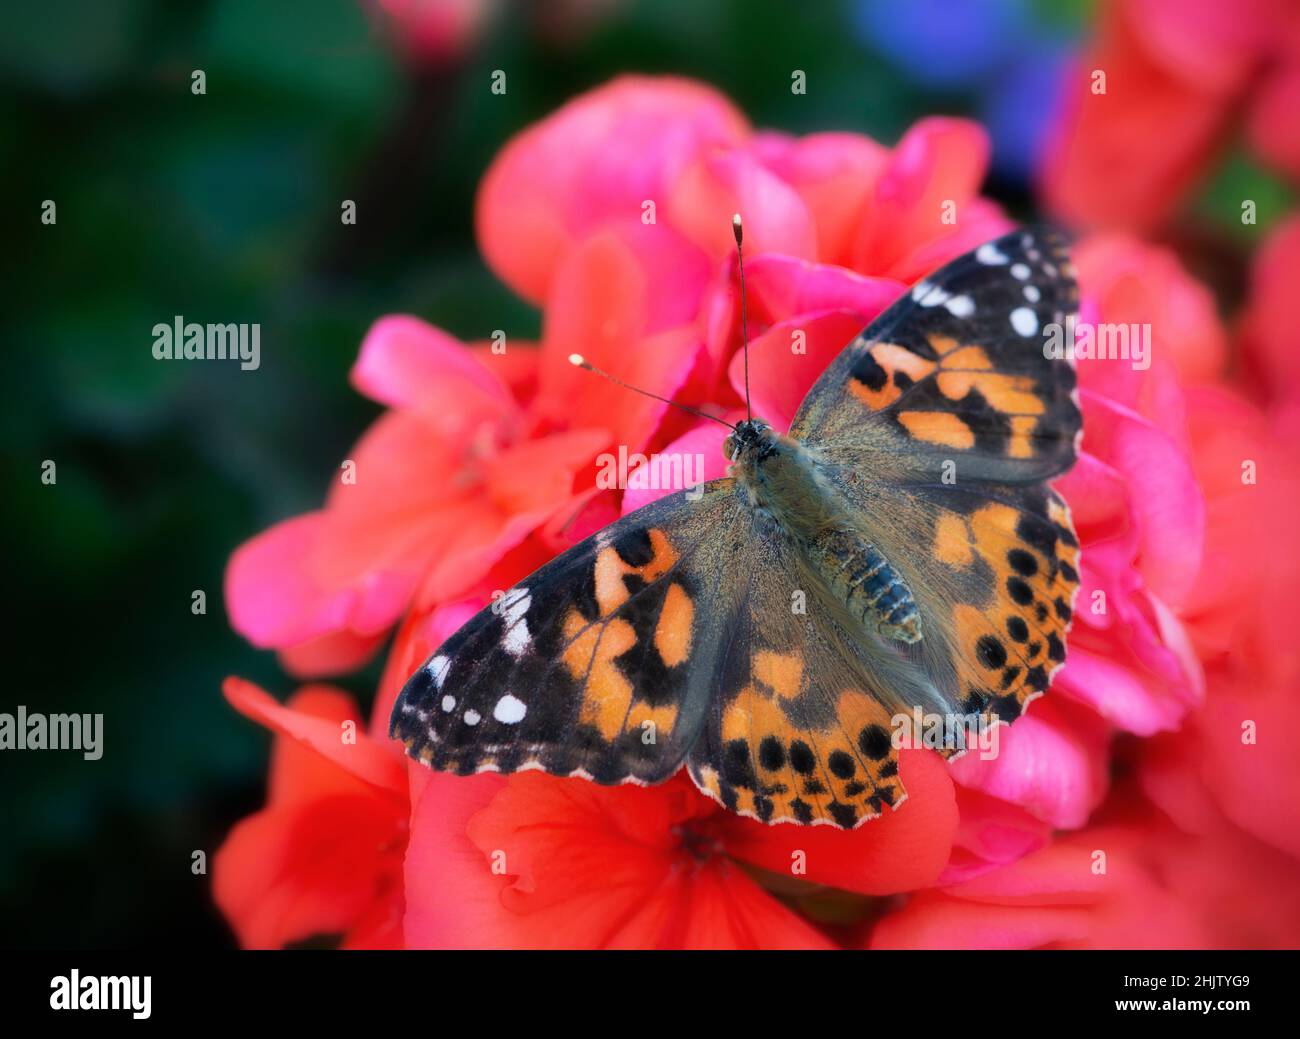 Gemalte Dame Schmetterling (vanessa cardui) mit seinen Flügeln ausgebreitet, ruht auf einer roten Geranienblume Stockfoto